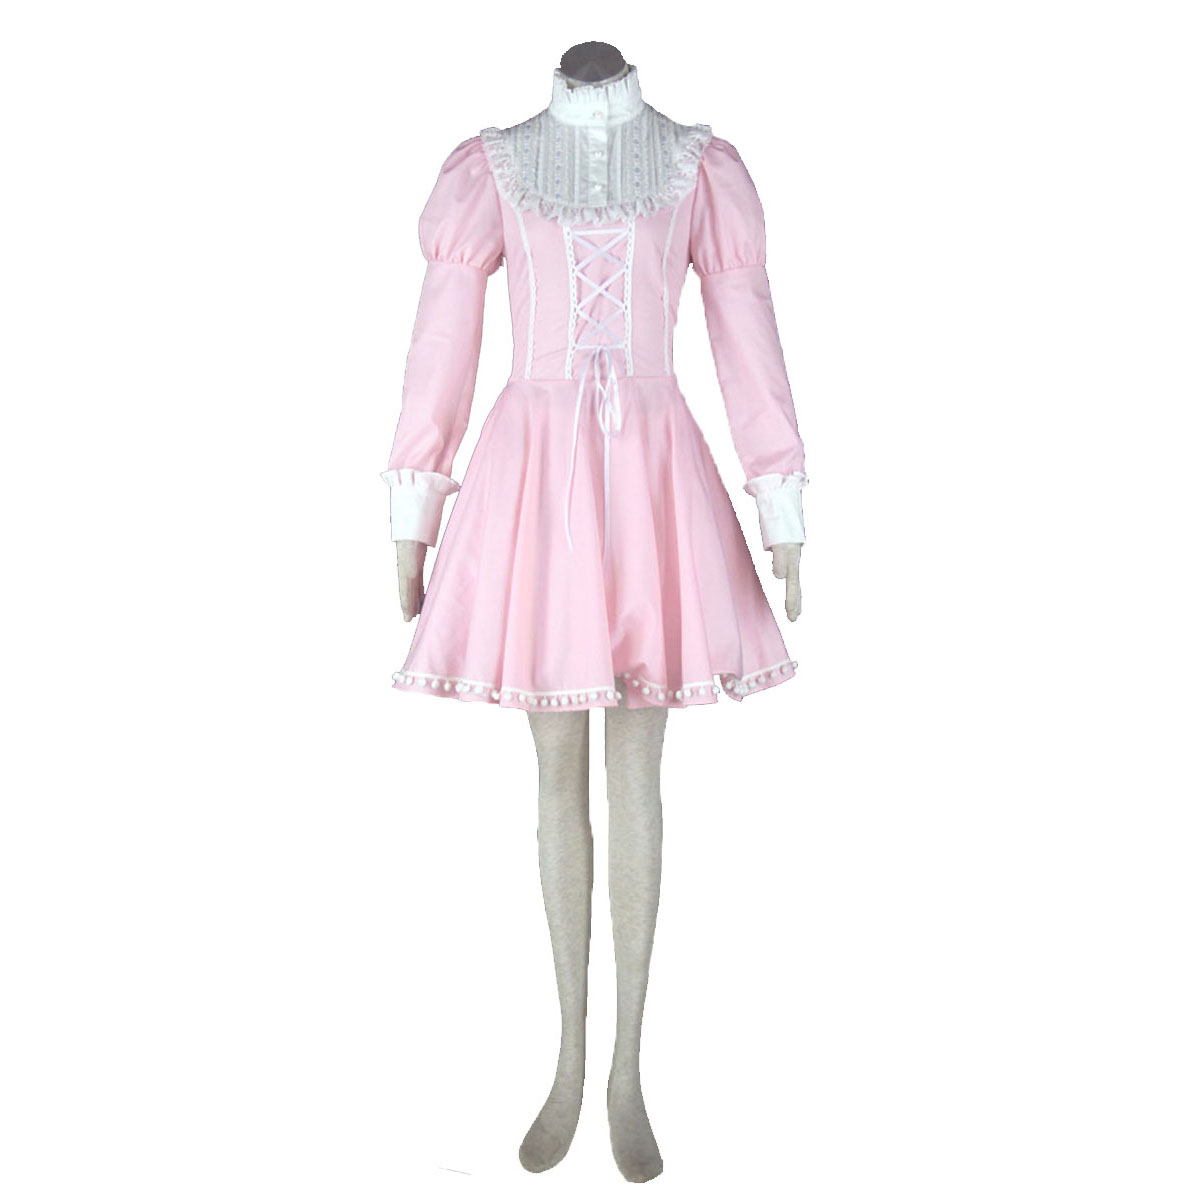 호화로운 로리타 문화 핑크 소동 짧은 드레스 코스프레 의상